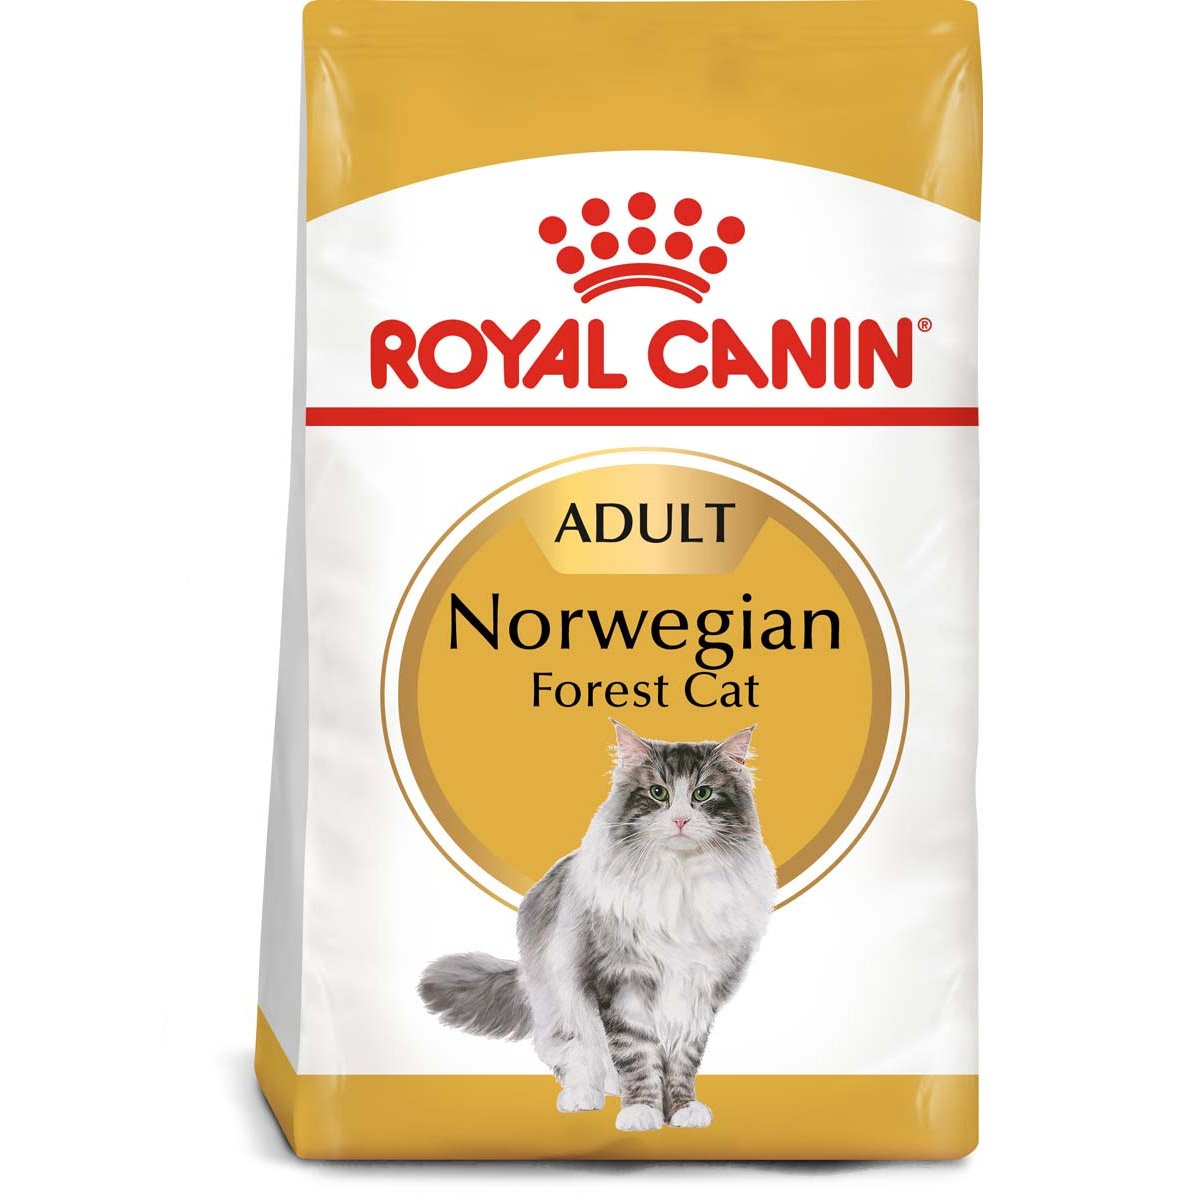 ROYAL CANIN Norwegian Forest Cat Adult Trockenfutter für Norwegische Waldkatzen 2x10kg von Royal Canin